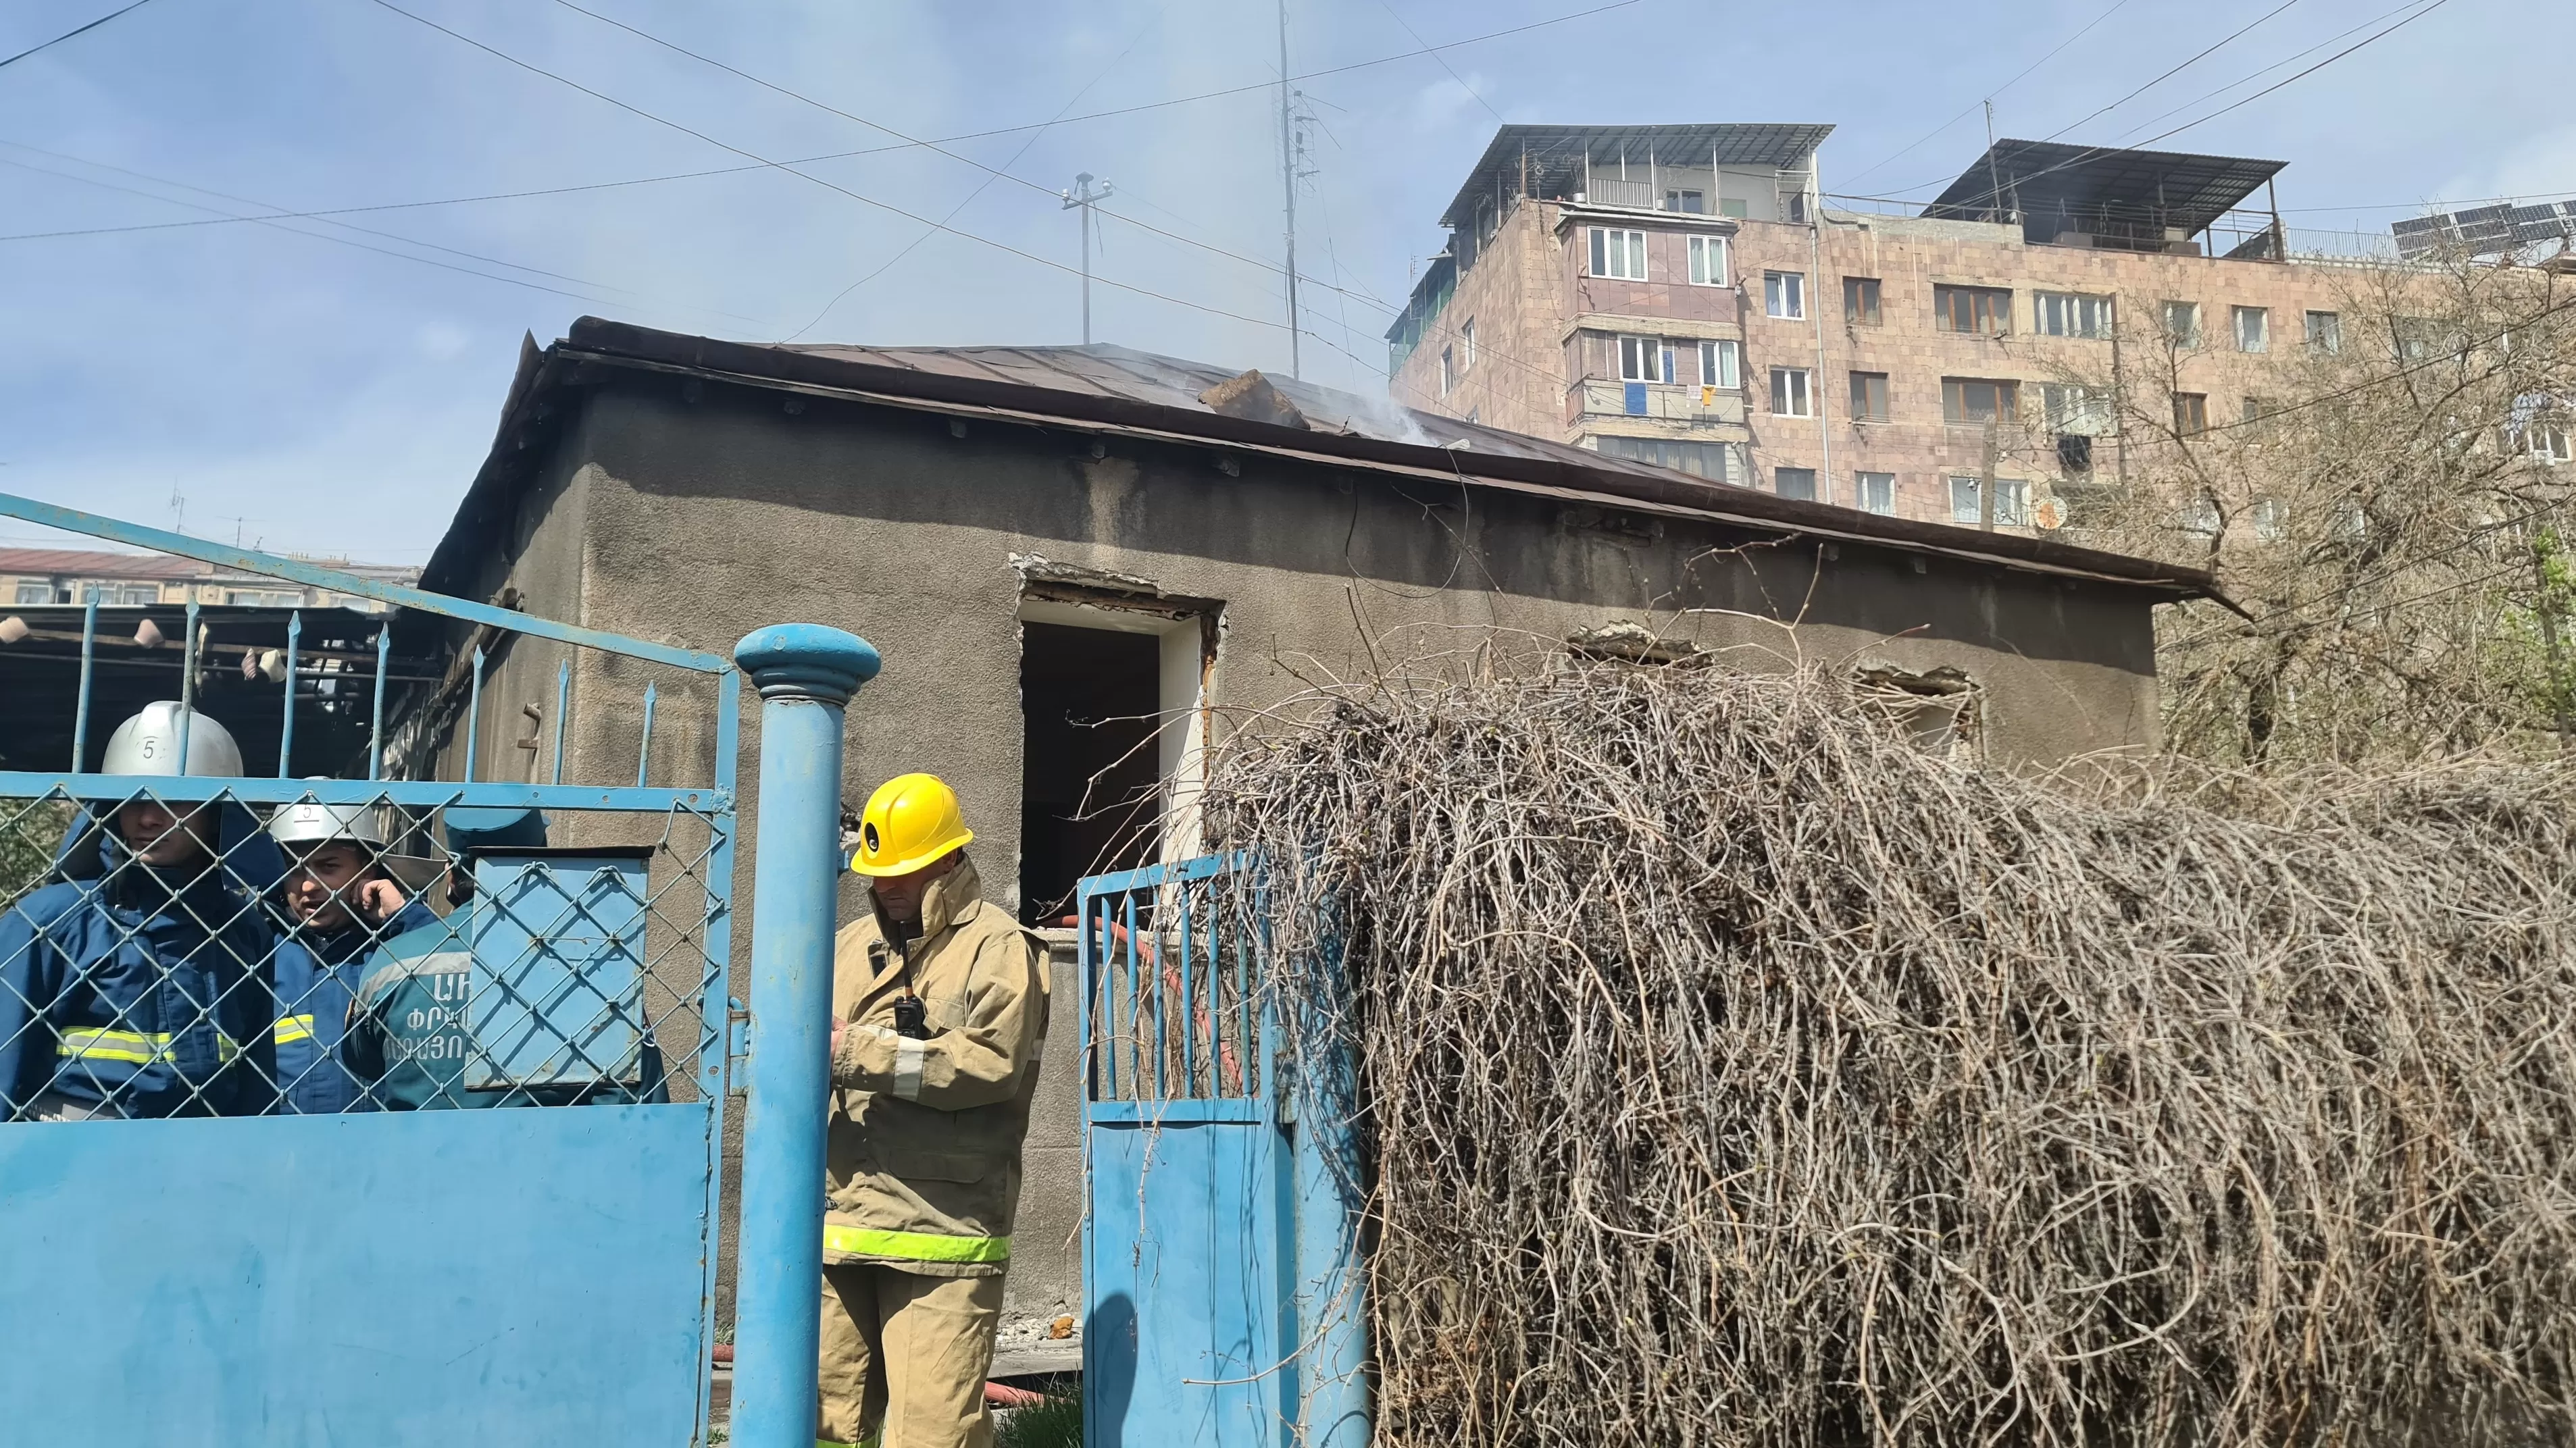 ՏԵՍԱՆՅՈՒԹ. Ահազանգ. Երևանում տուն է այրվում